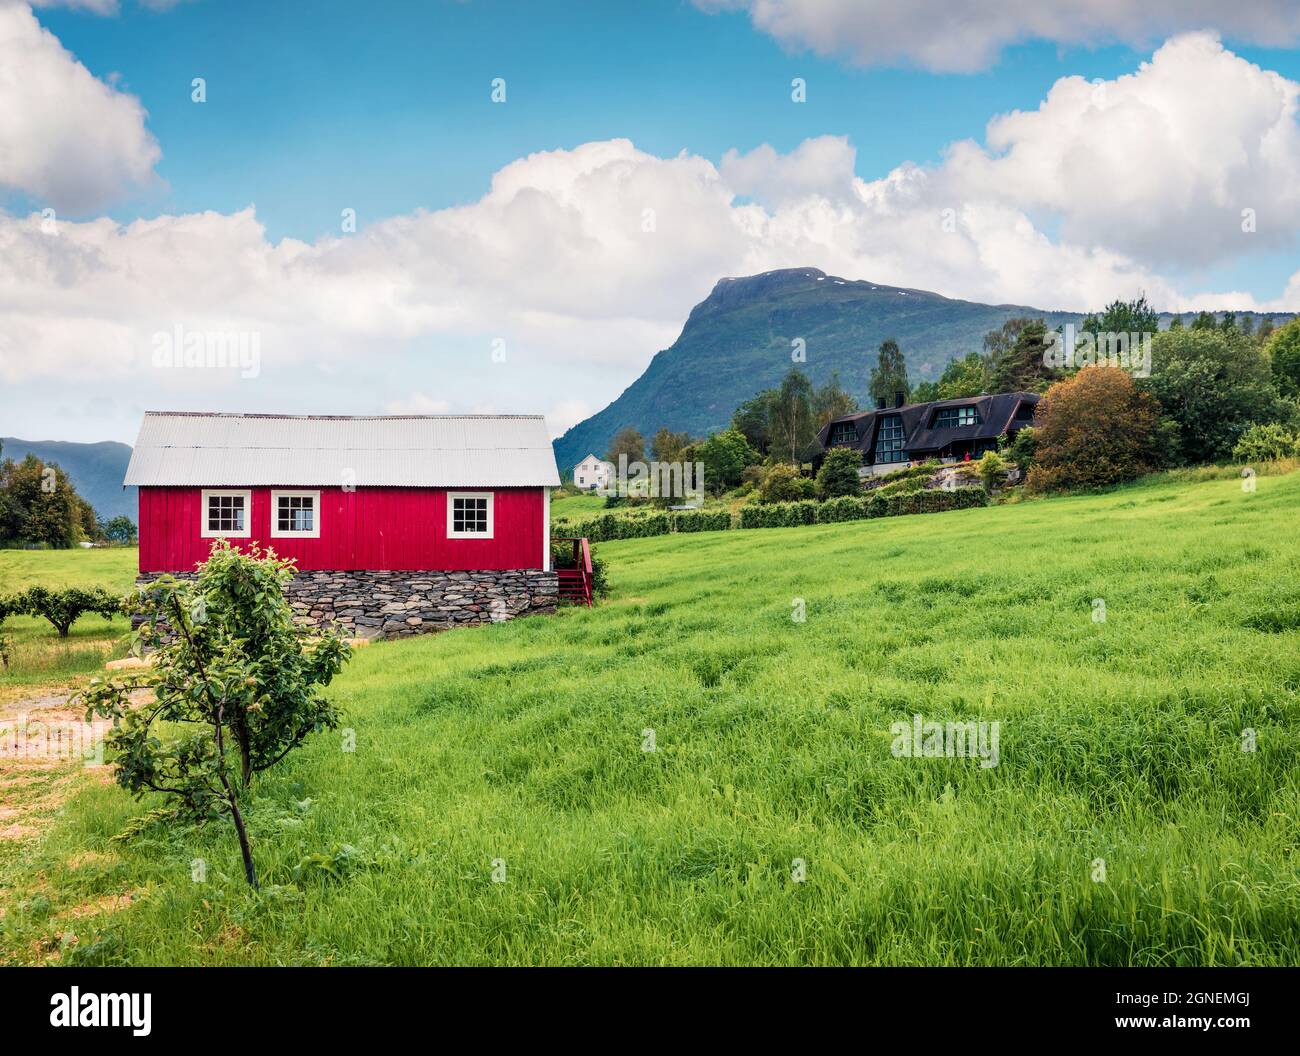 Campagne typique paysage norvégien avec maison murale peinte en rouge. Matin d'été pittoresque en Norvège, en Europe. Beauté de la nature concept fond Banque D'Images